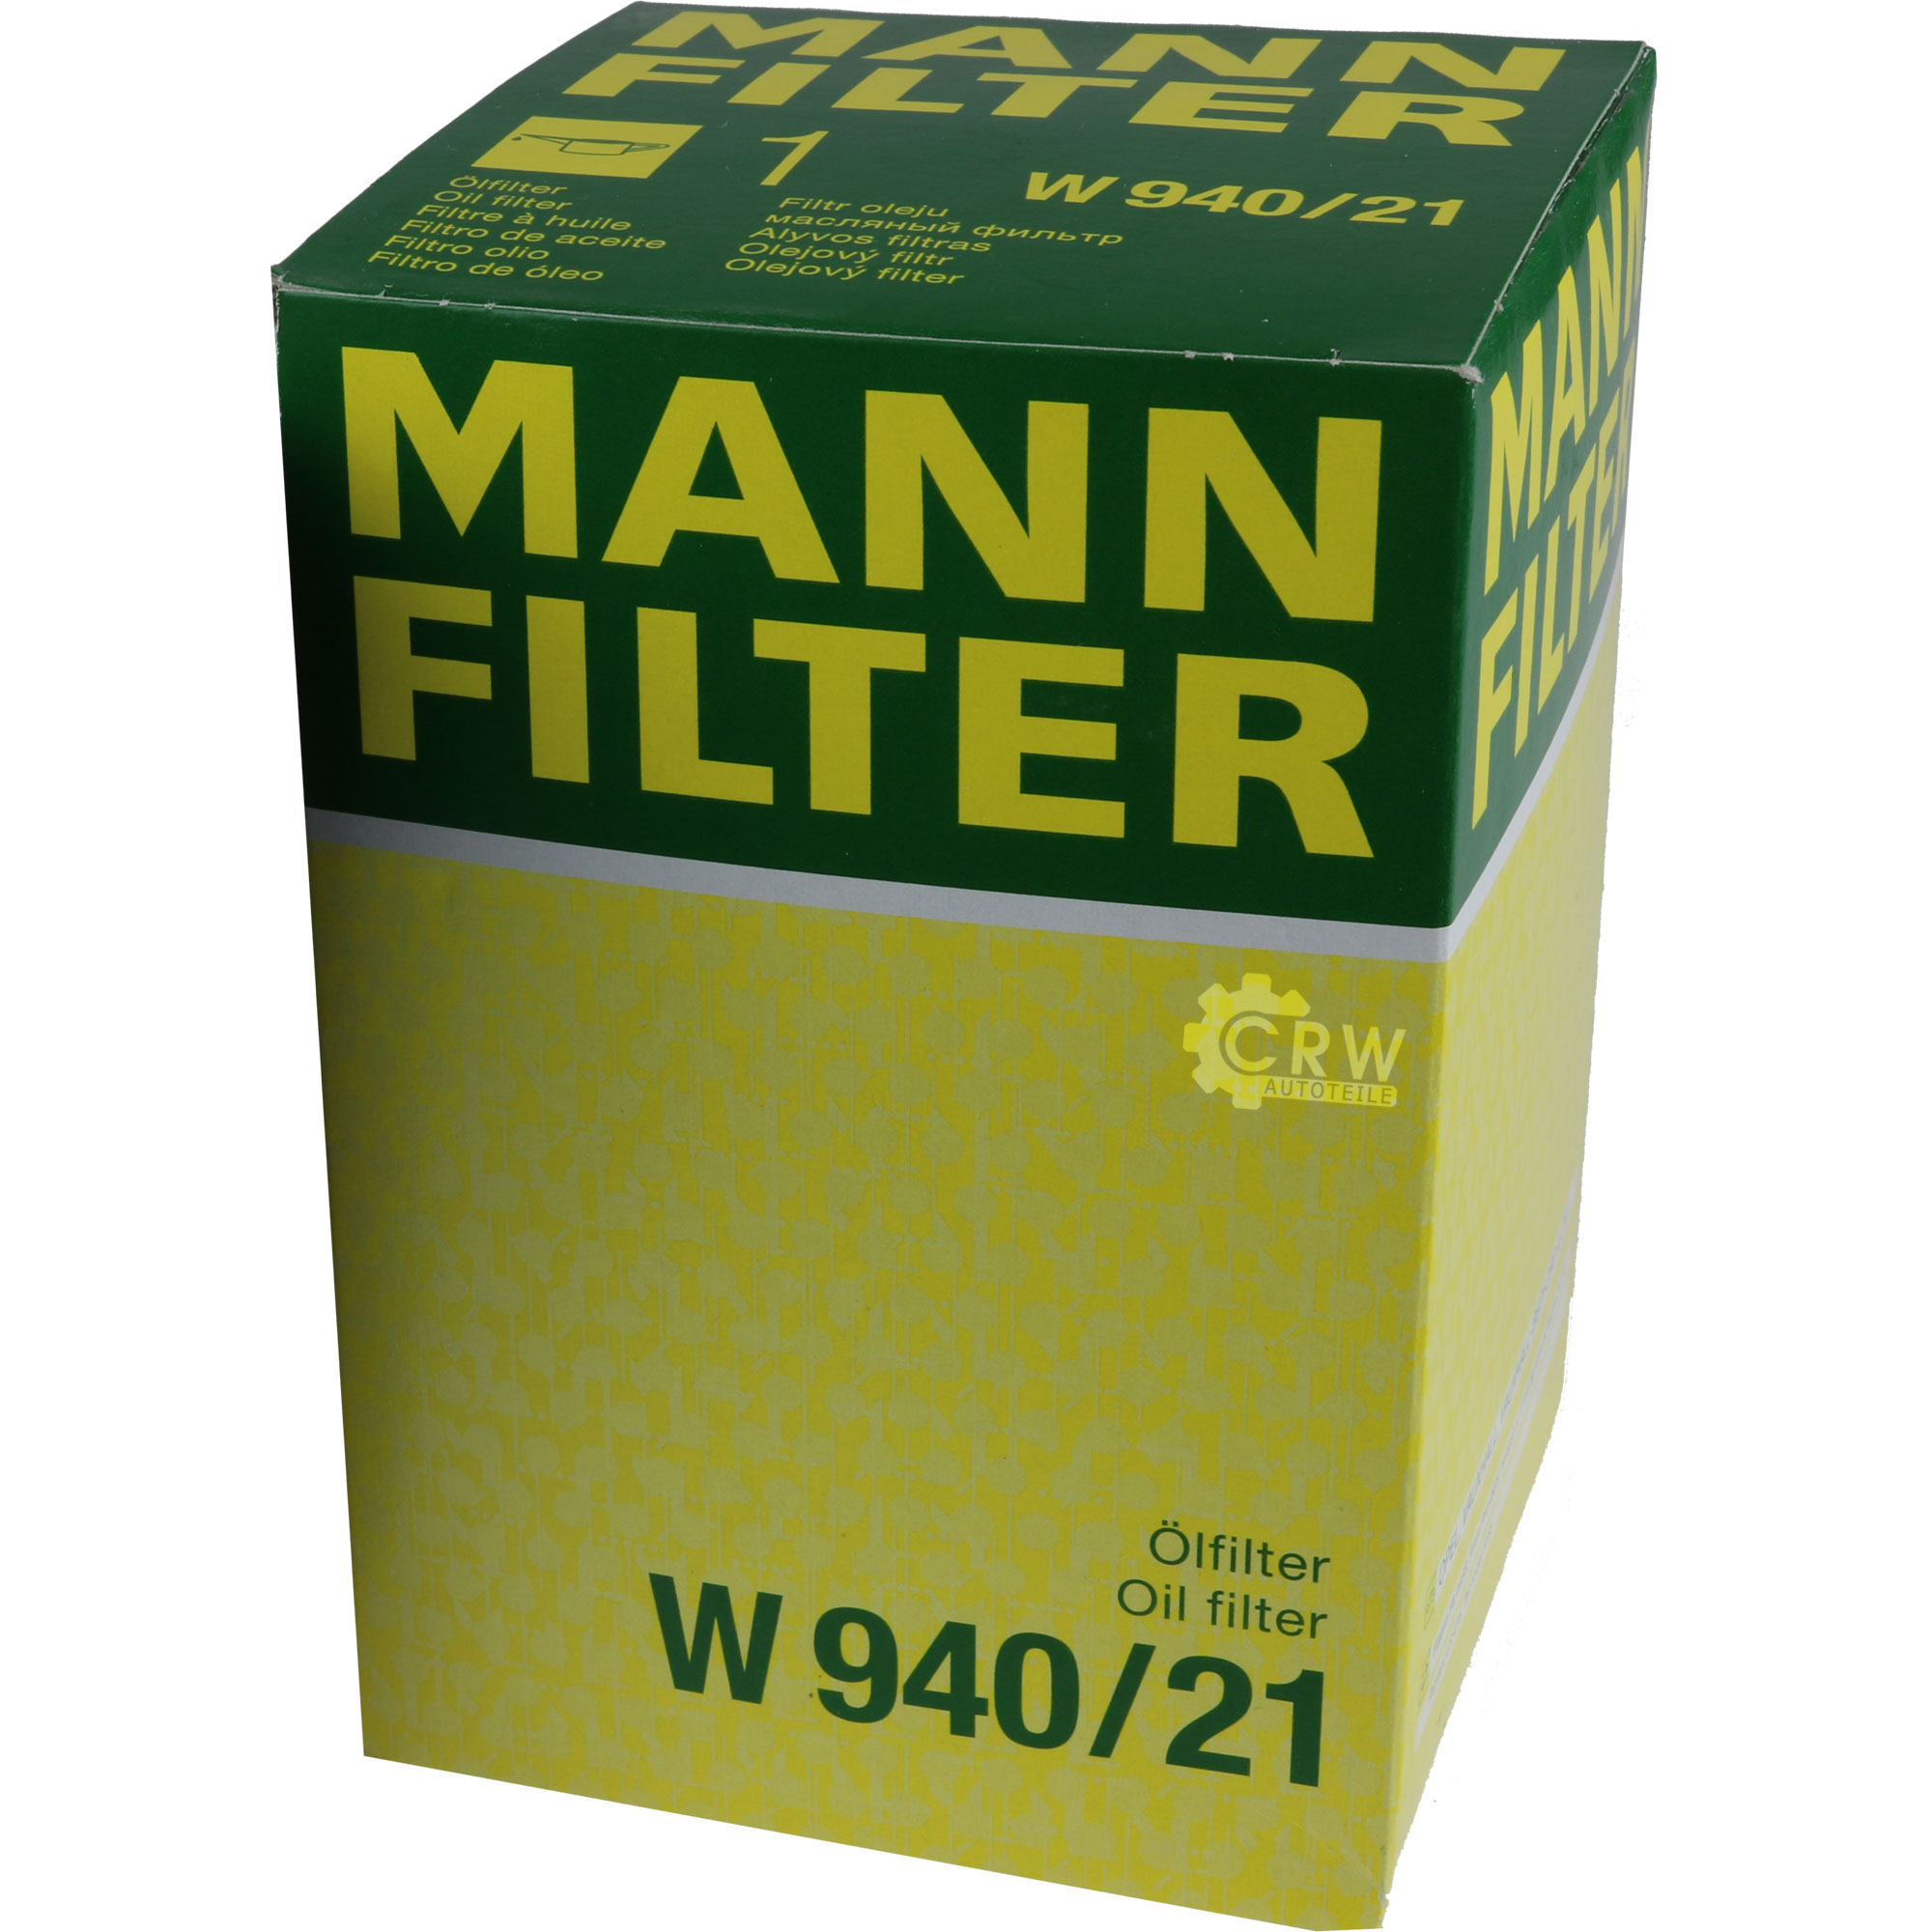 MANN-FILTER Ölfilter W 940/21 Oil Filter